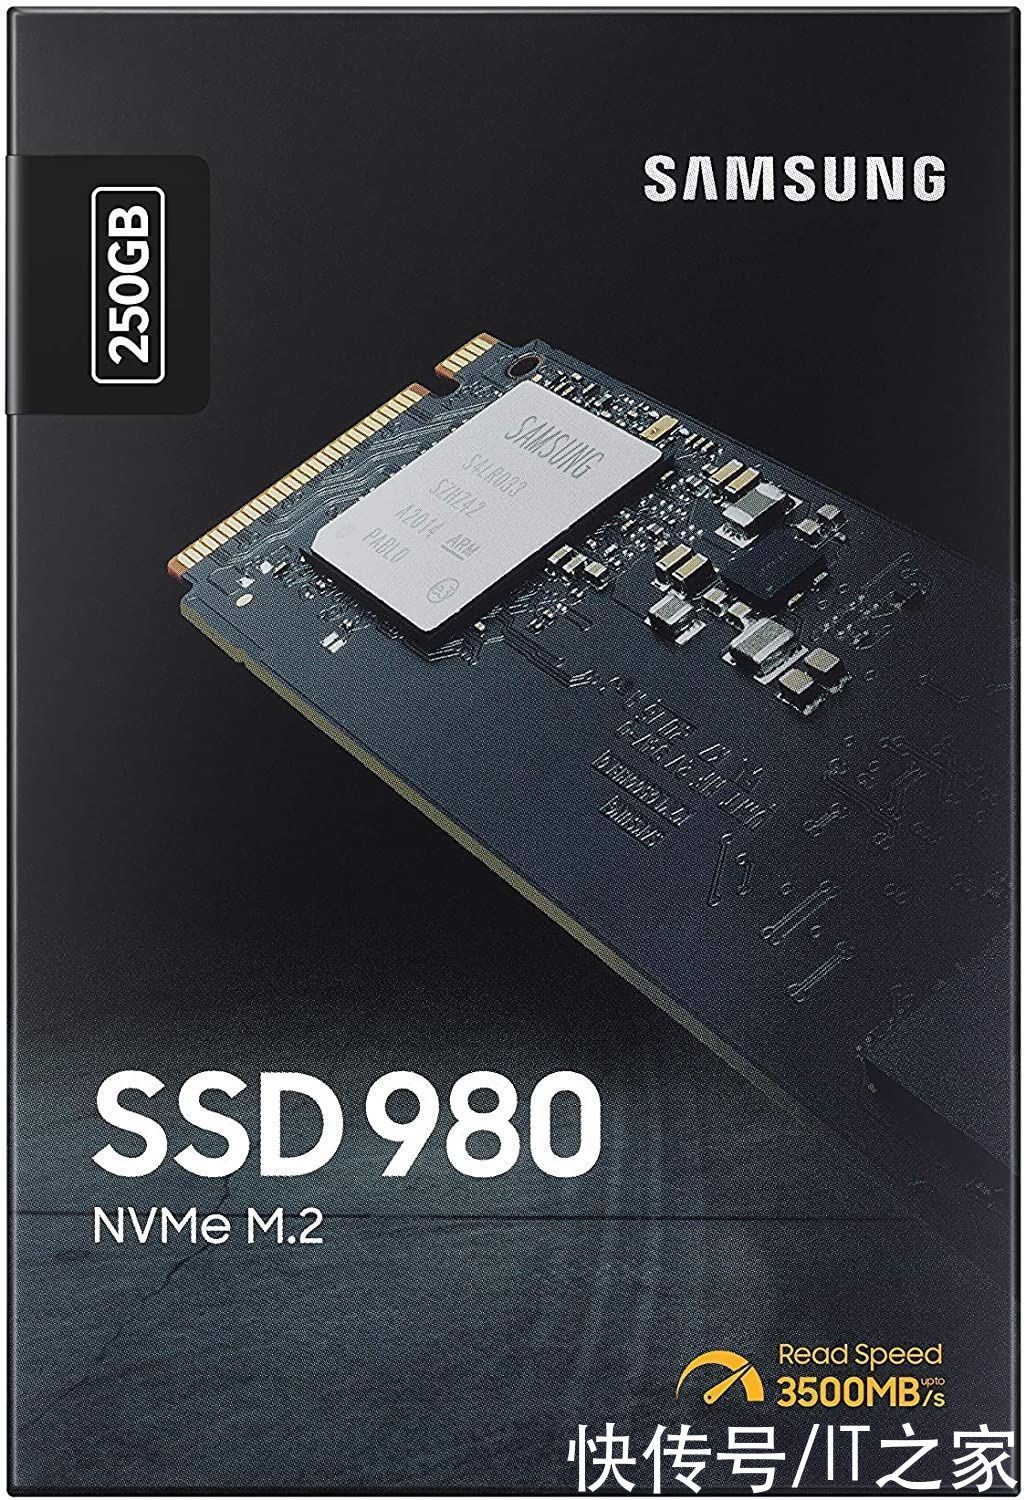 980 SSD 亚马逊上架:1TB 售价 130 美元